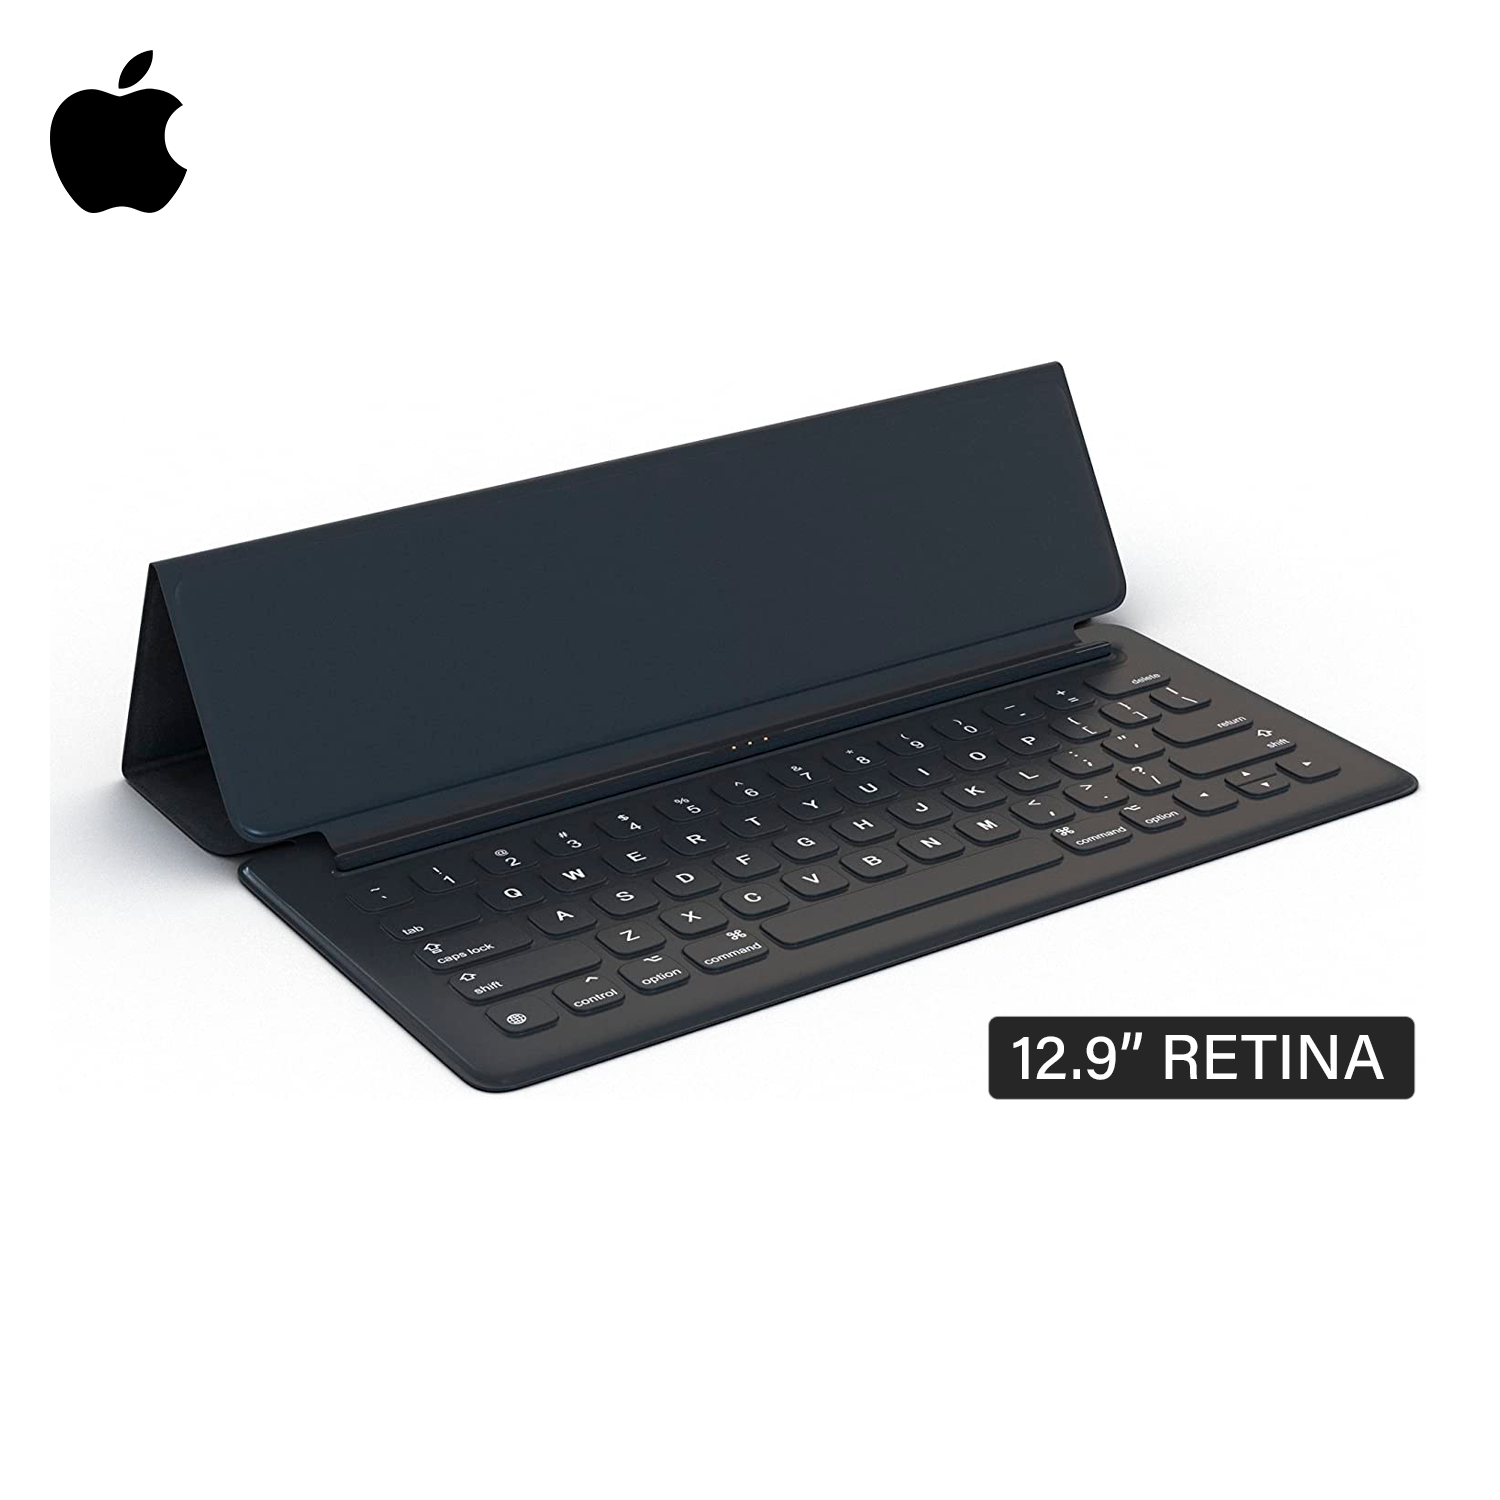 Teclado Smart Keyboard Folio para el iPad Pro de 12.9 pulgadas